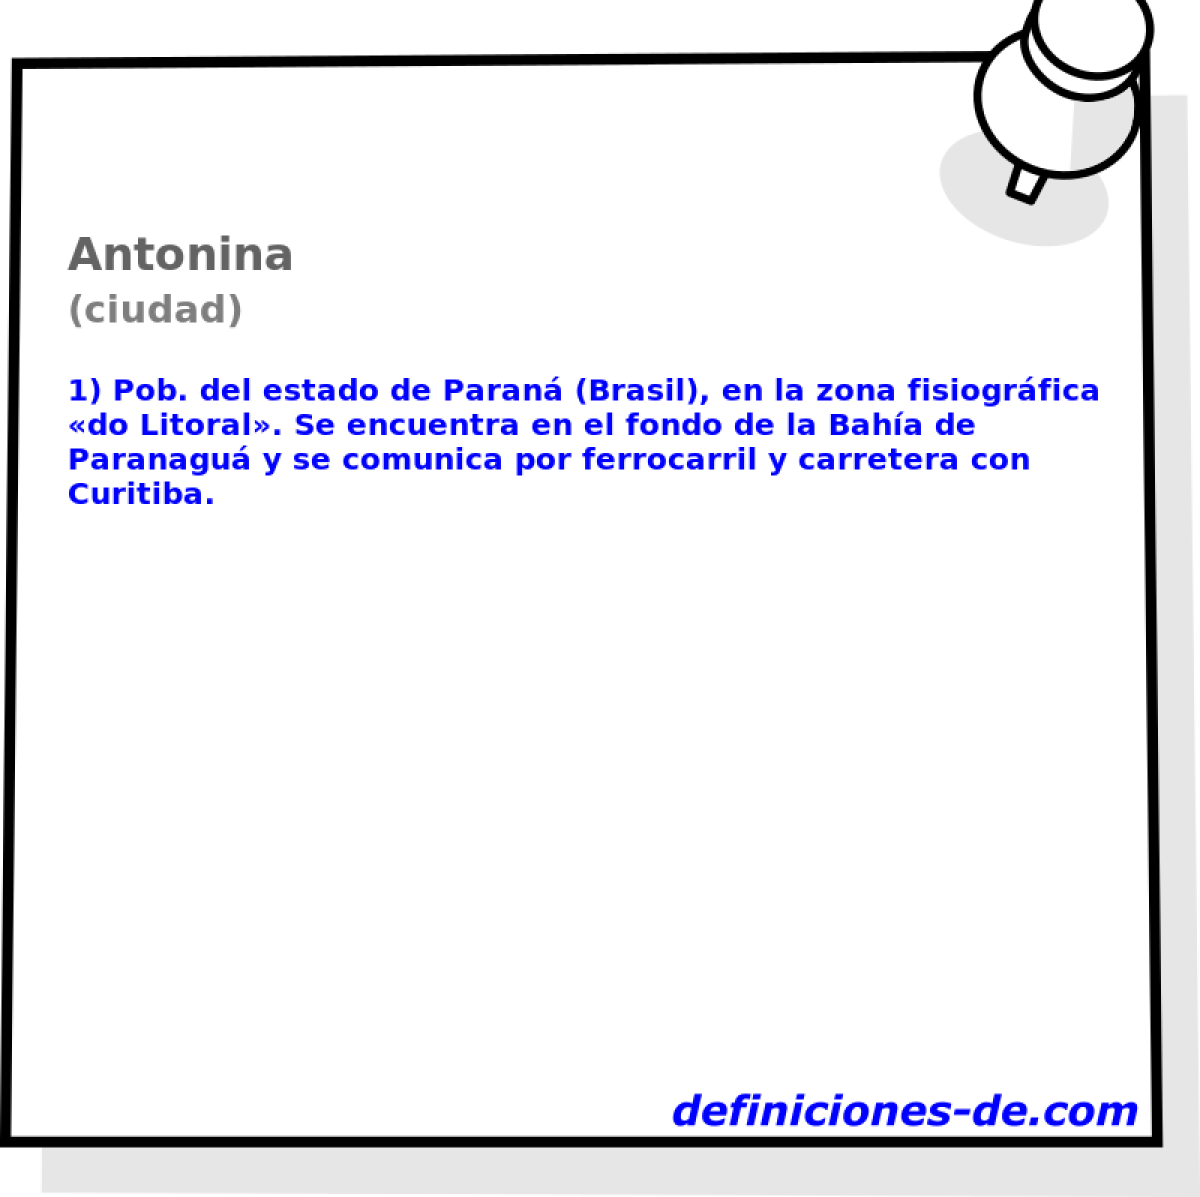 Antonina (ciudad)